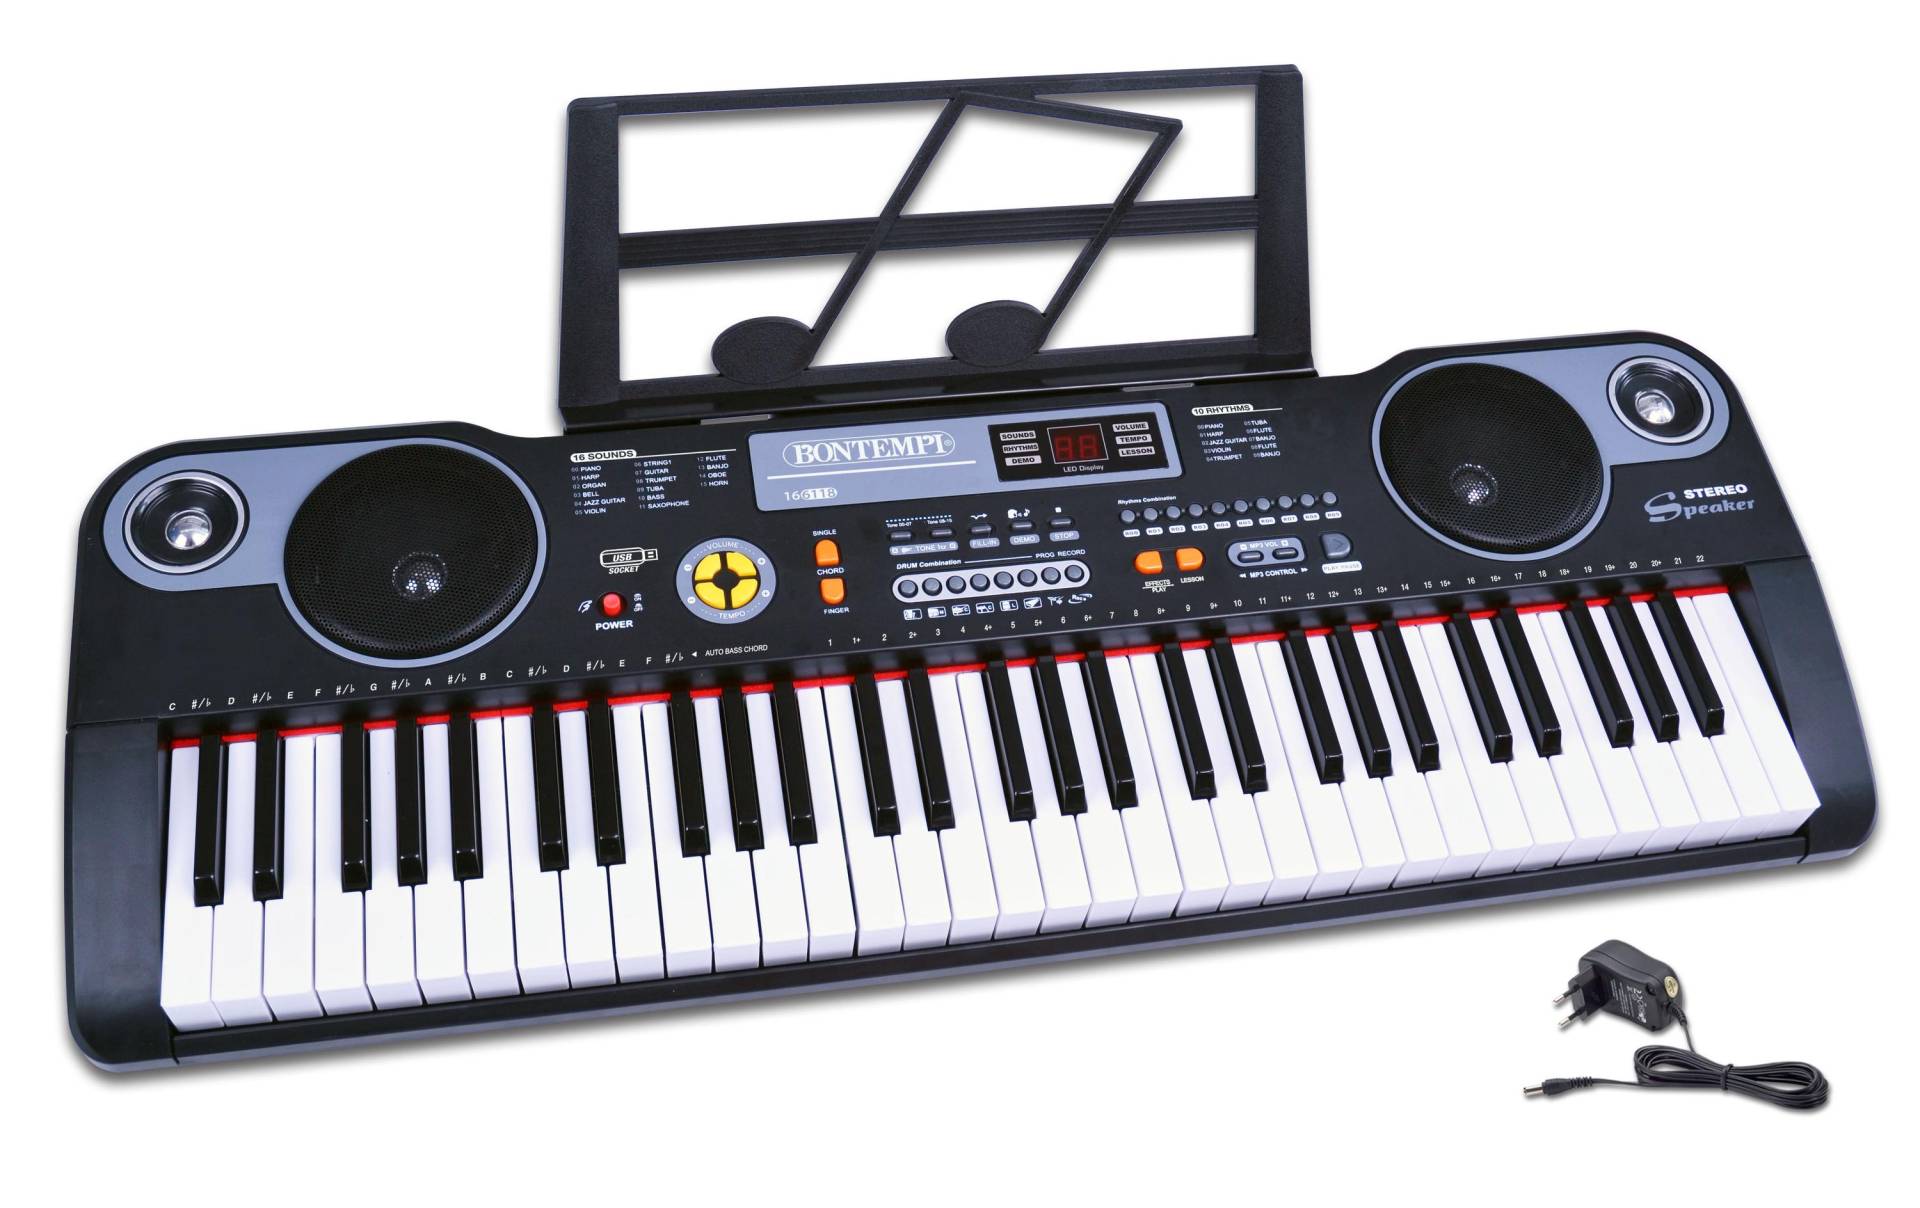 Bontempi Spielzeug-Musikinstrument »Keyboard 61 Tasten« von Bontempi